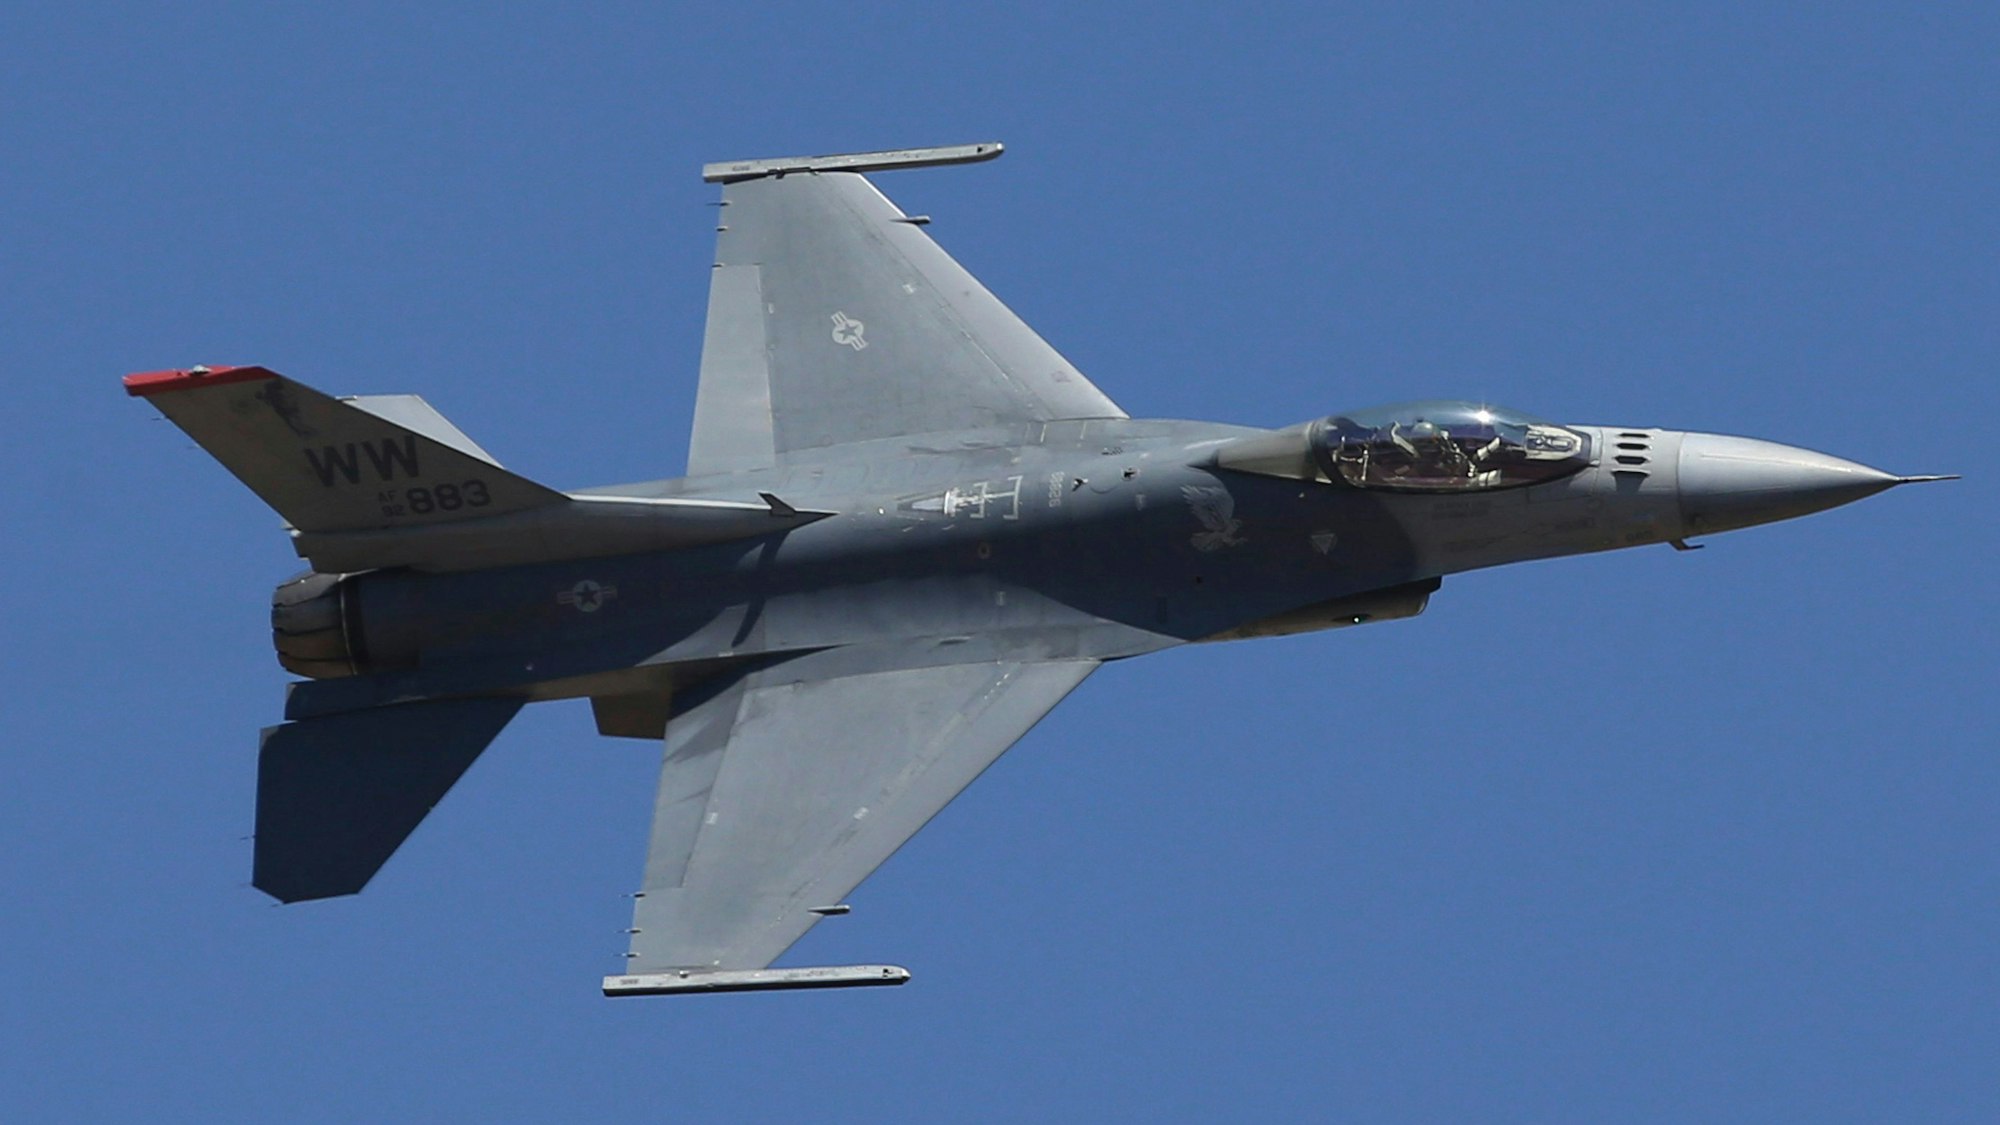 Ein US-Kampfflugzeug vom Typ F-16 fliegt am Himmel.